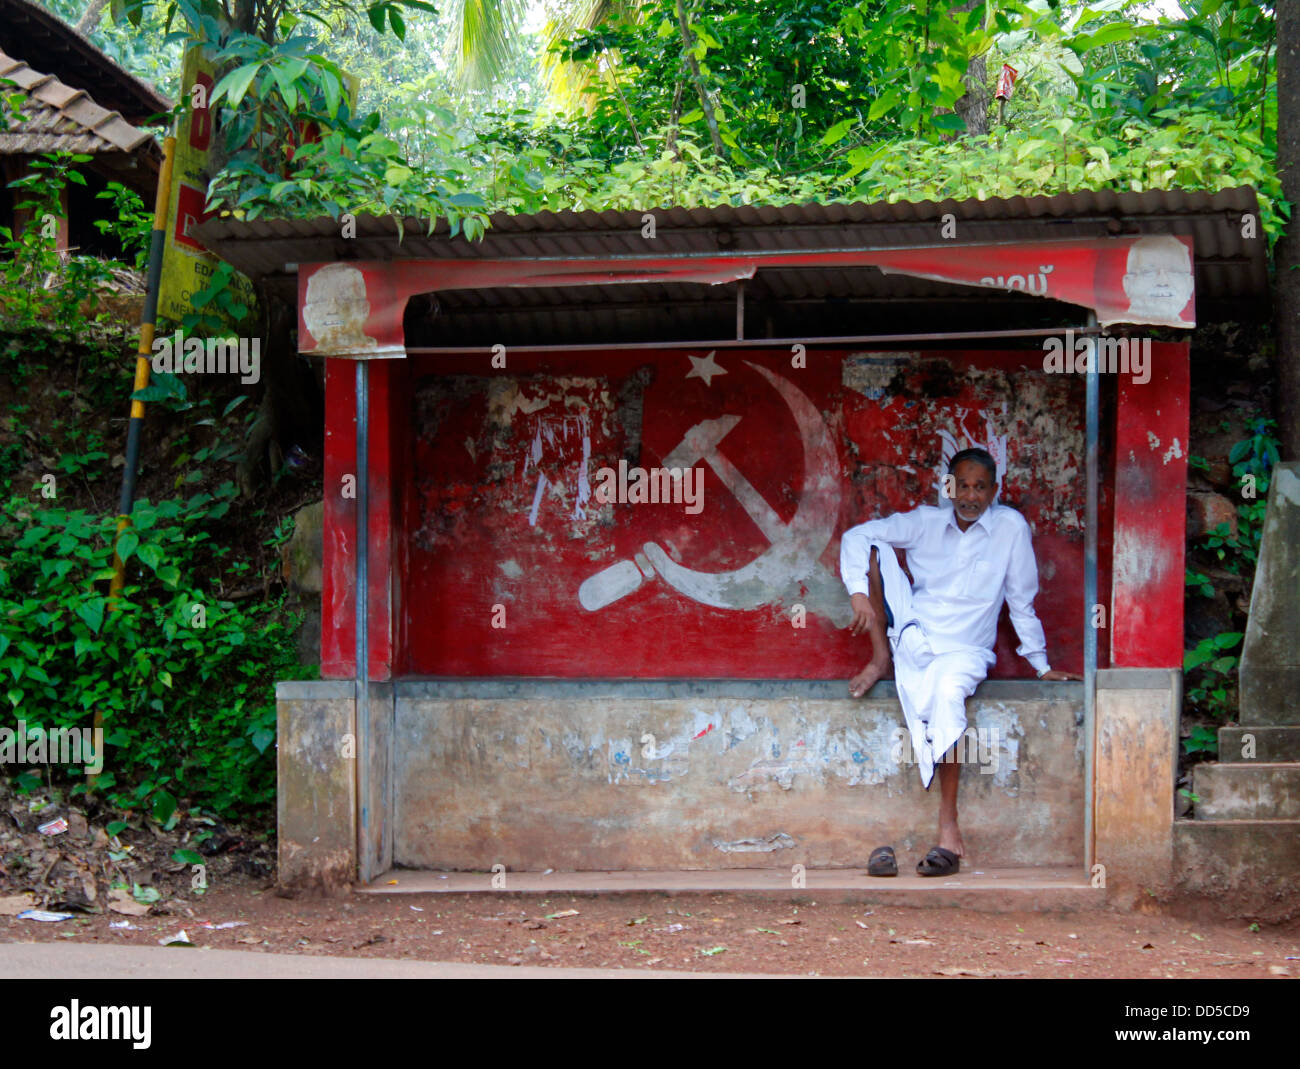 Uomo seduto su un capannone con graffiti comunista; rural Kerala, India Foto Stock